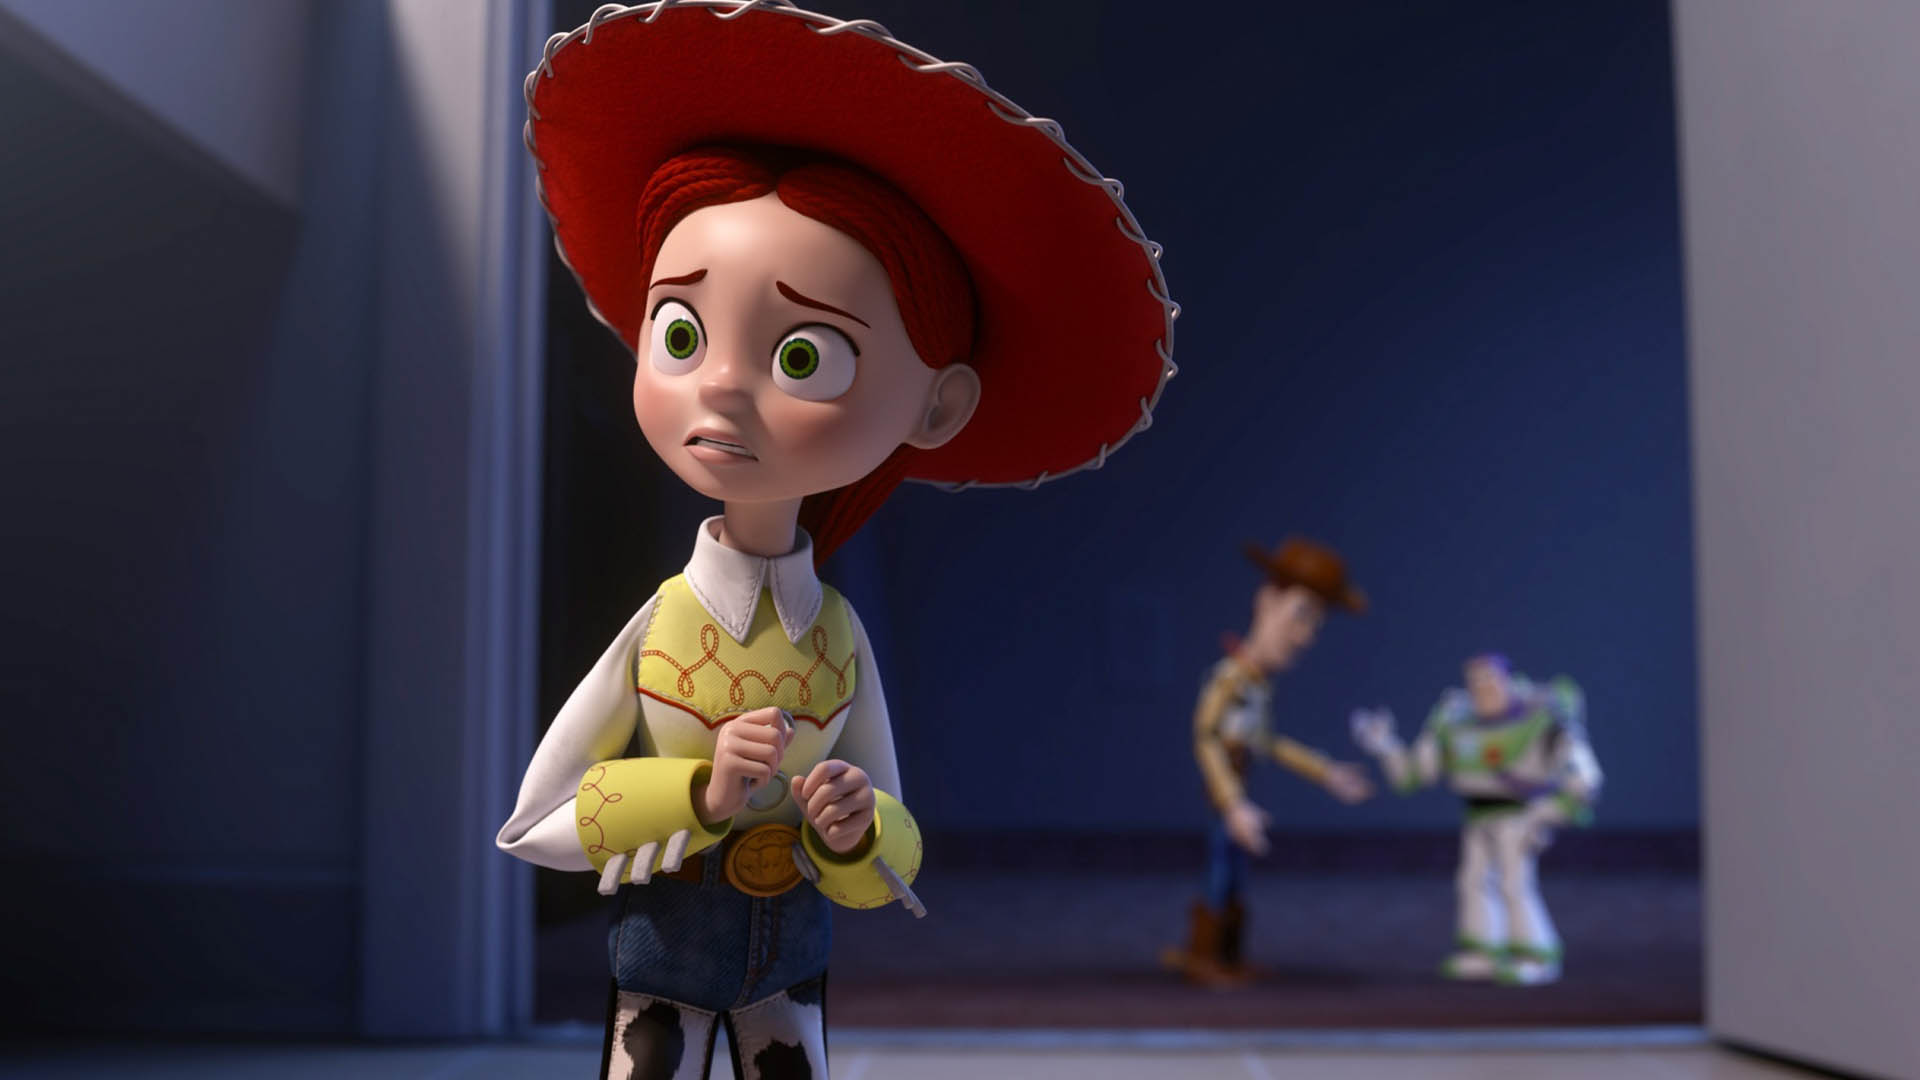 شخصیت جسی و نمایی از وودی و باز در مجموعه انیمیشن های Toy Story